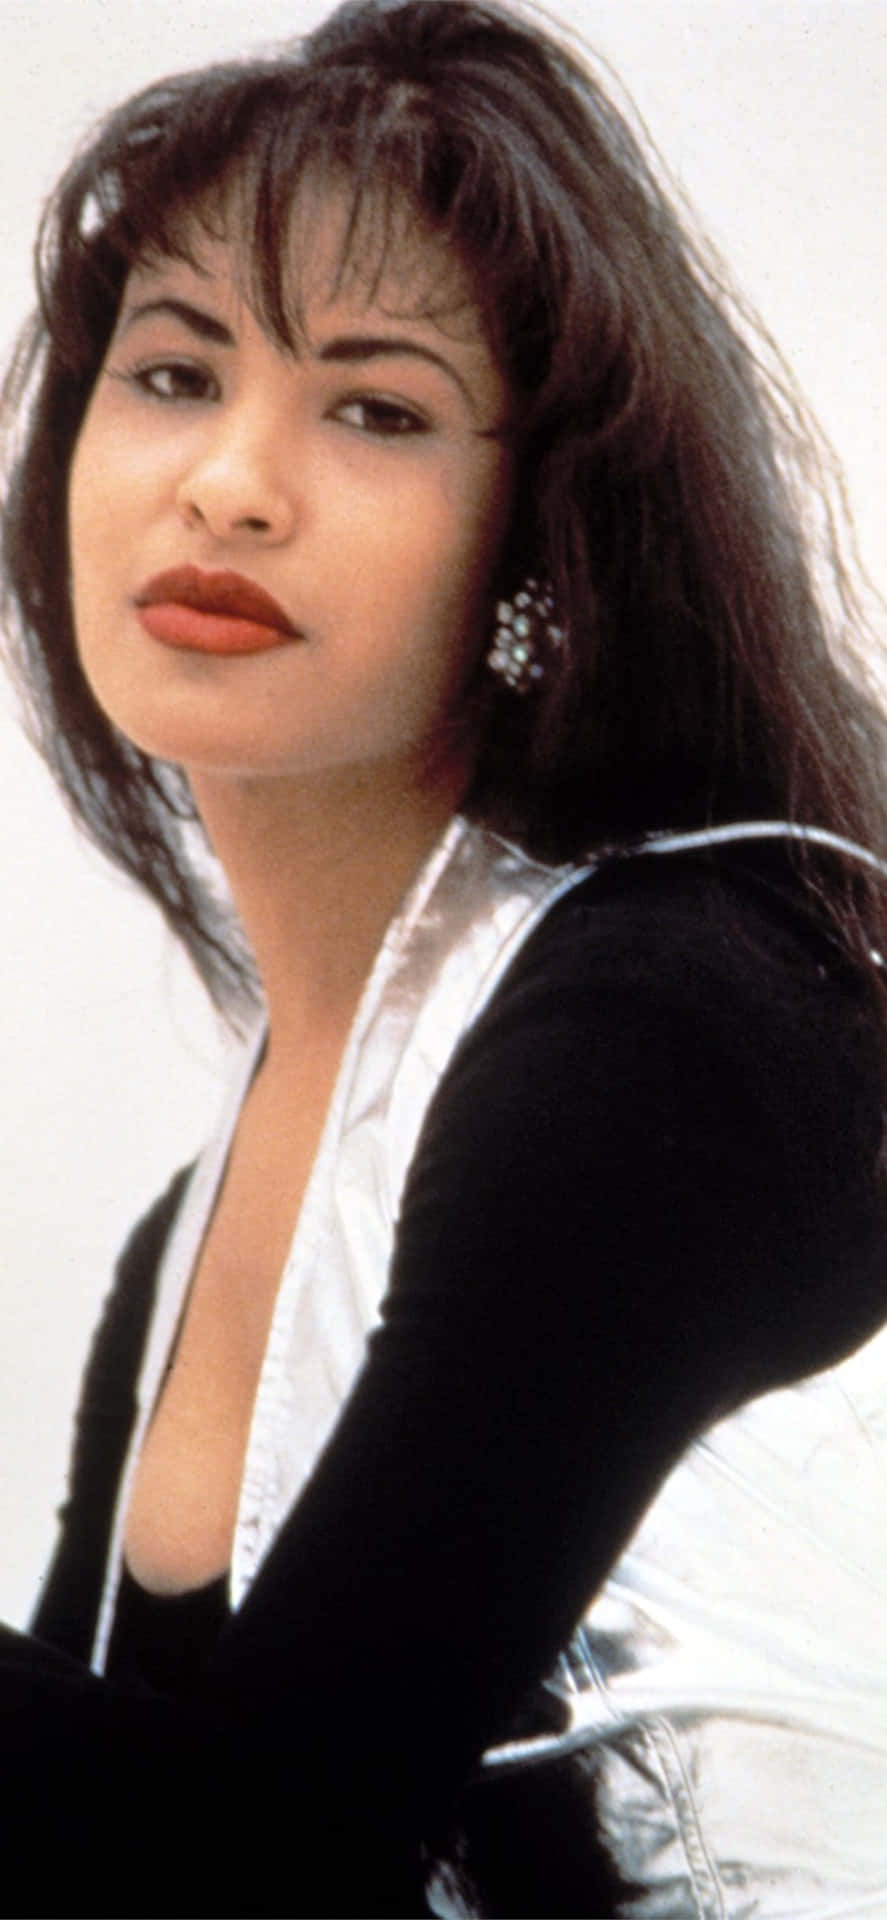 Vis din kærlighed til Selena Quintanilla med denne iPhone tapet. Wallpaper